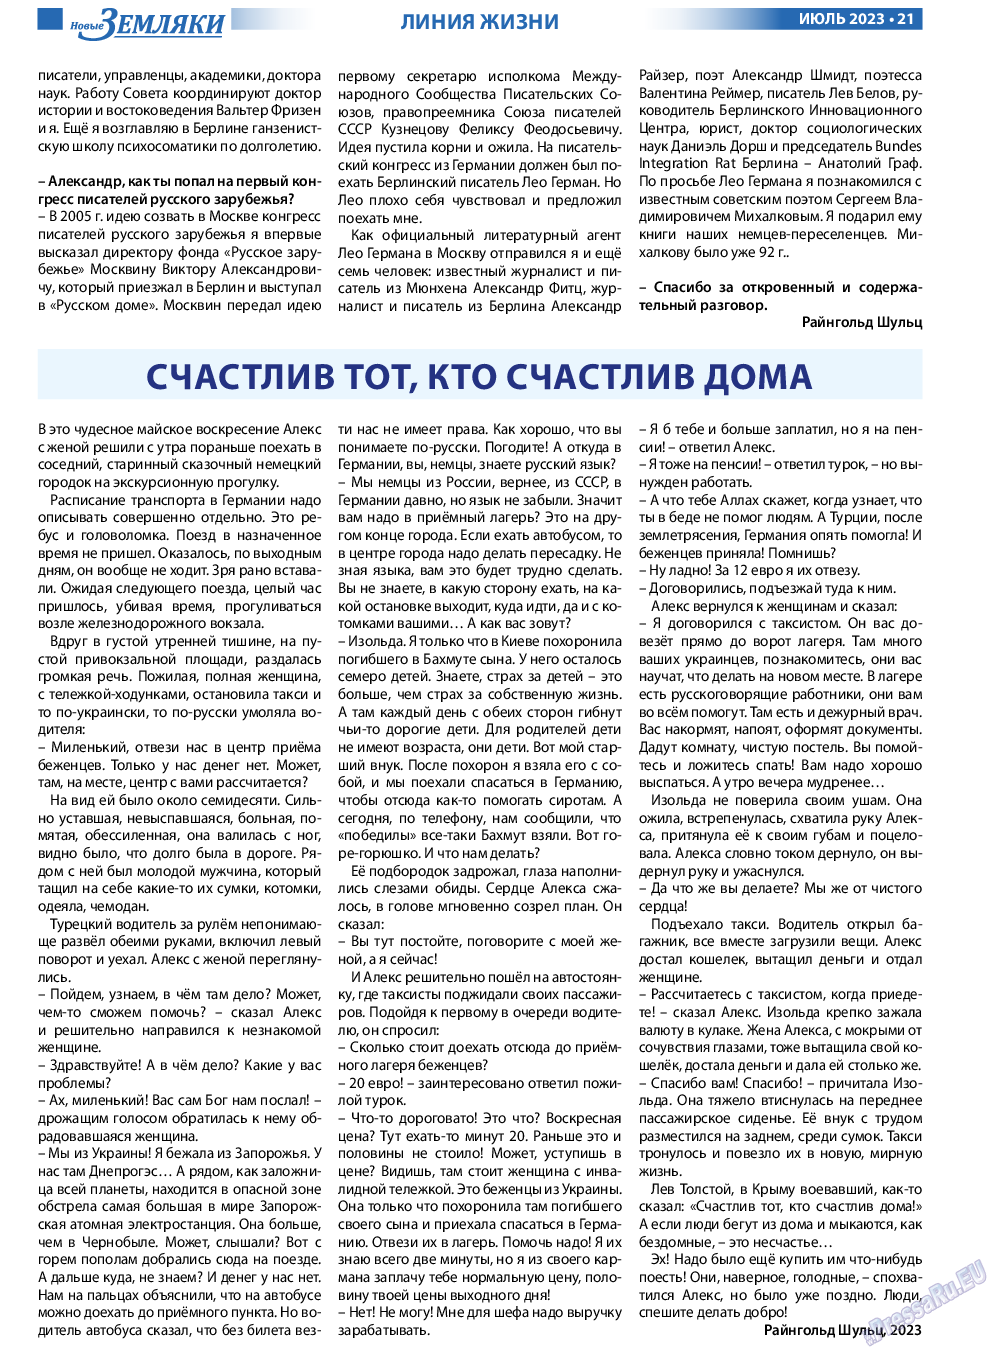 Новые Земляки, газета. 2023 №7 стр.21